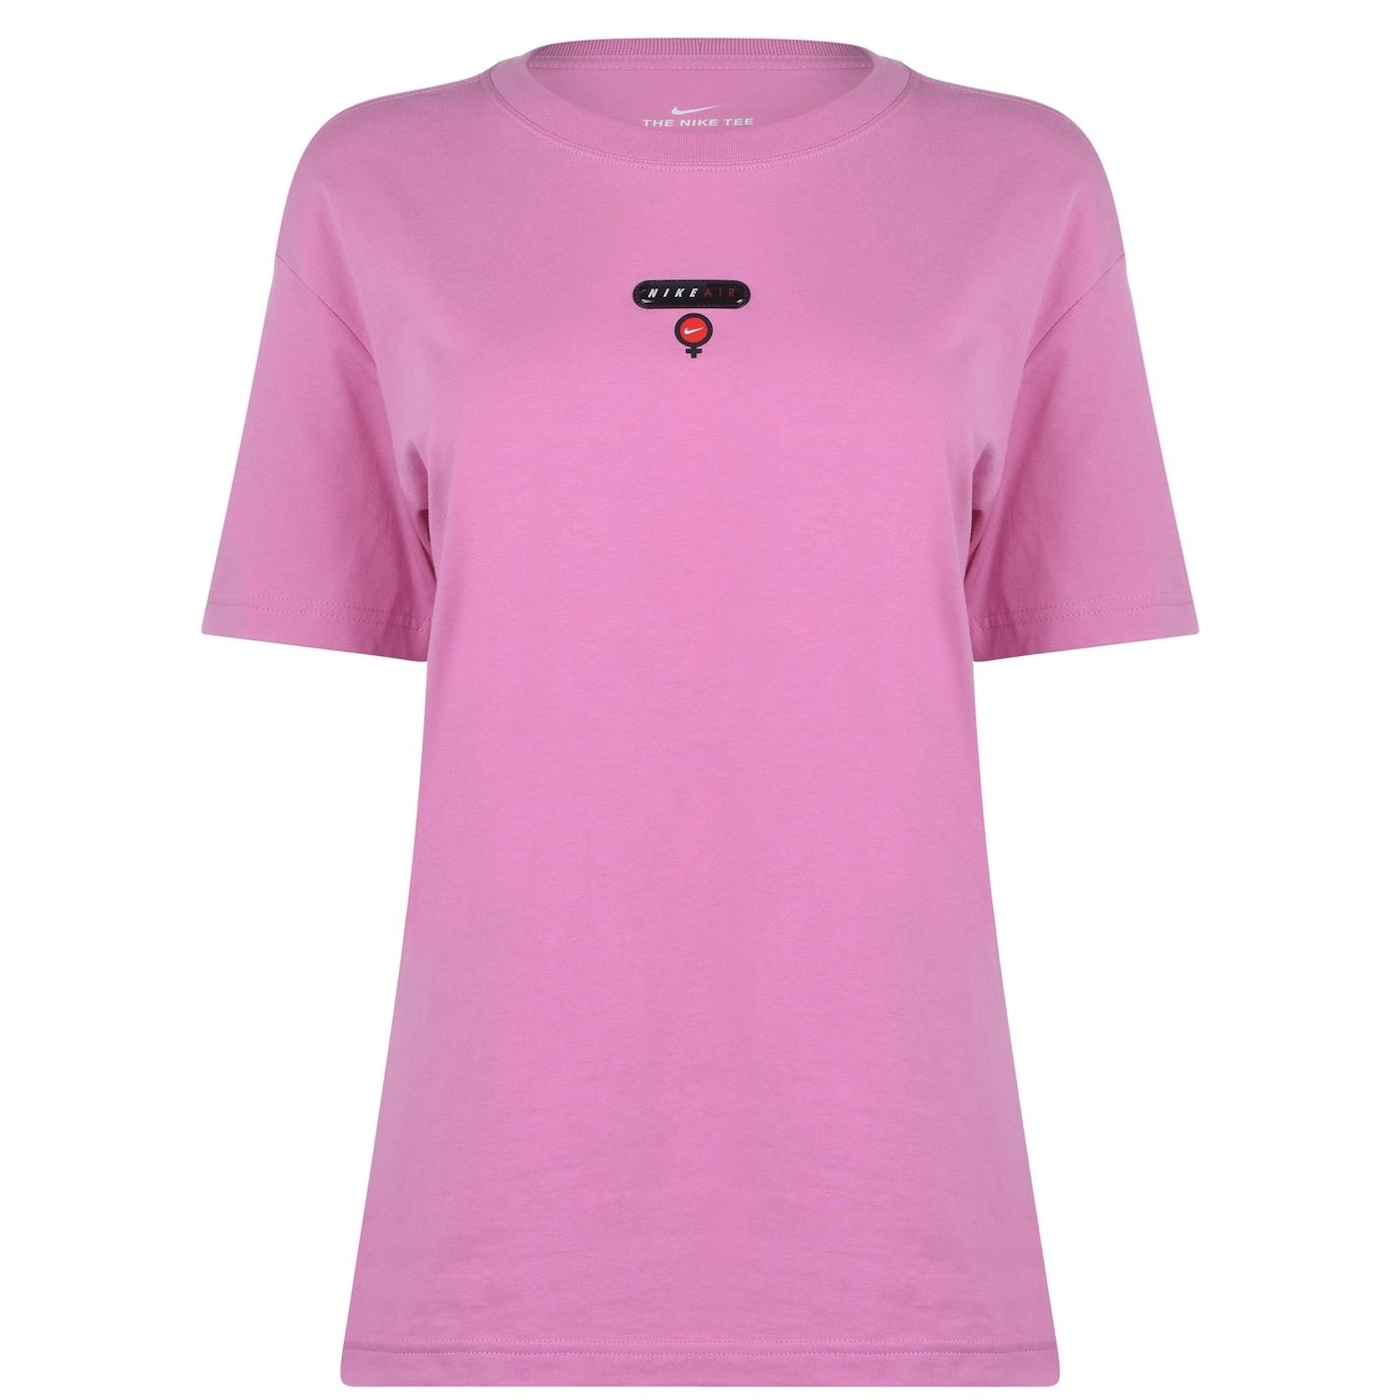 Жени  Дамско облекло  Блузи  С къс ръкав Nike Airess T-Shirt Ladies 1218238-6824093